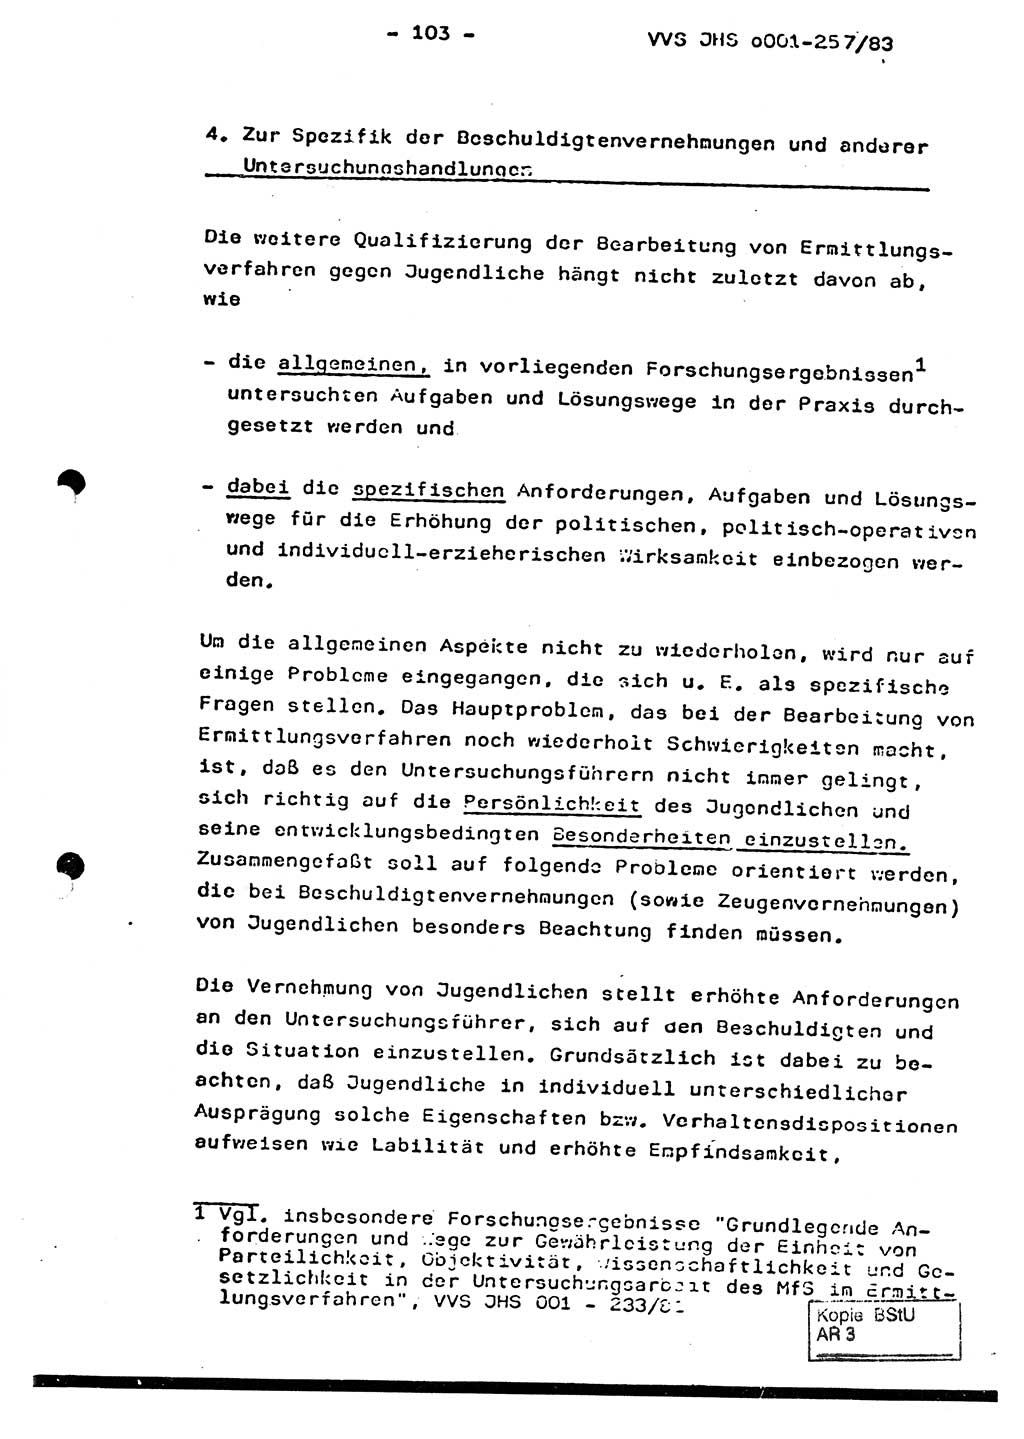 Dissertation, Oberst Helmut Lubas (BV Mdg.), Oberstleutnant Manfred Eschberger (HA IX), Oberleutnant Hans-Jürgen Ludwig (JHS), Ministerium für Staatssicherheit (MfS) [Deutsche Demokratische Republik (DDR)], Juristische Hochschule (JHS), Vertrauliche Verschlußsache (VVS) o001-257/83, Potsdam 1983, Seite 103 (Diss. MfS DDR JHS VVS o001-257/83 1983, S. 103)